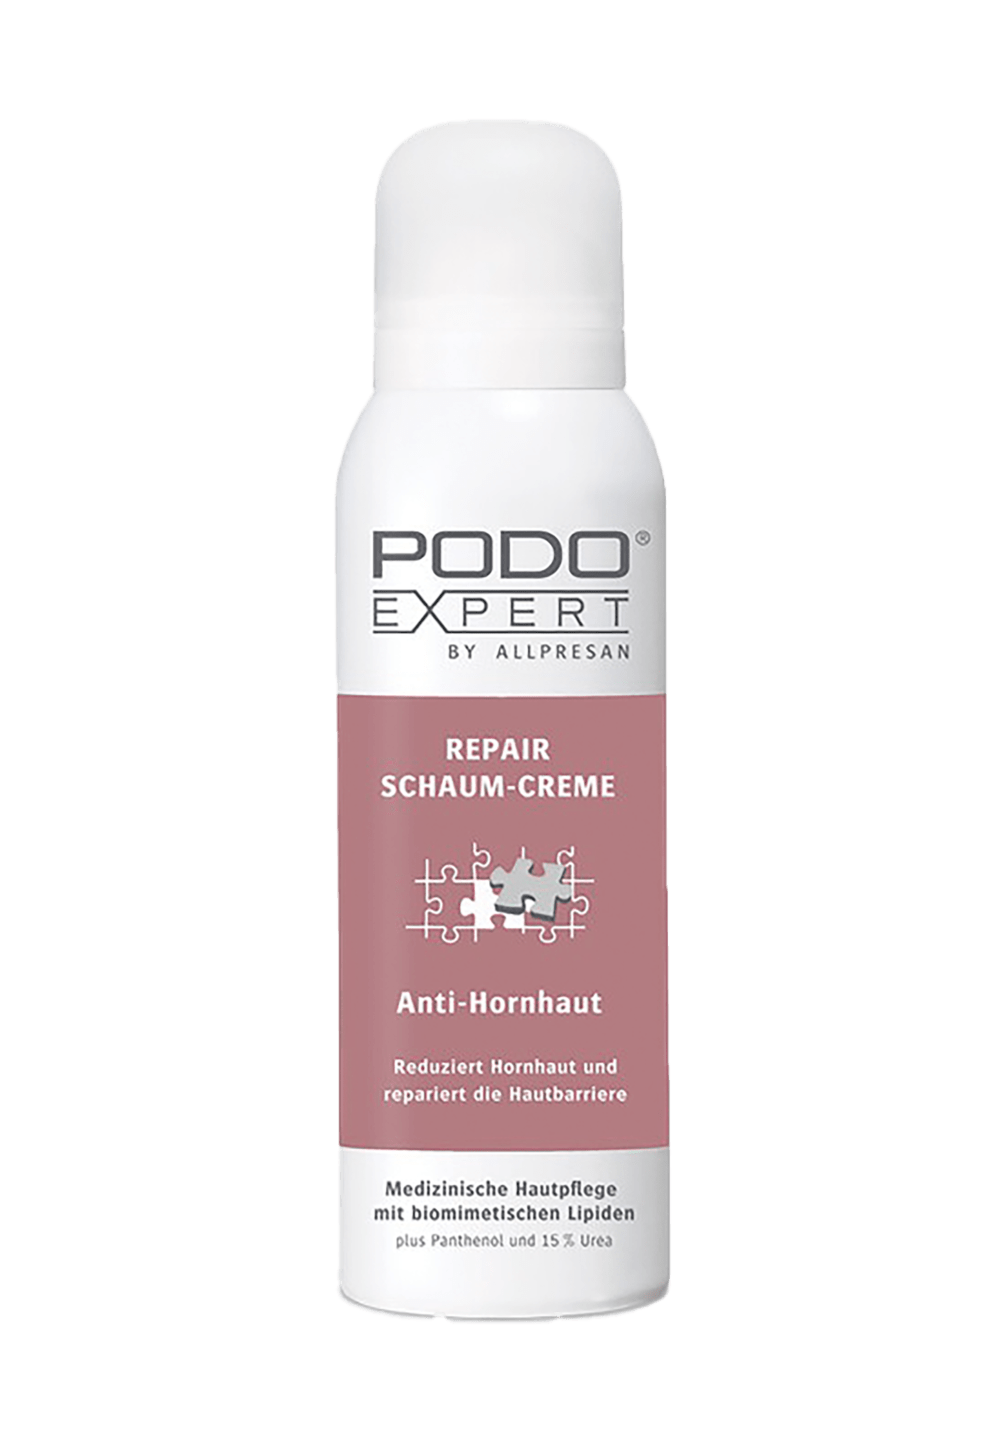 Podoexpert by Allpresan - Repair Schaum-Creme Anti-Hornhaut, 125 ml